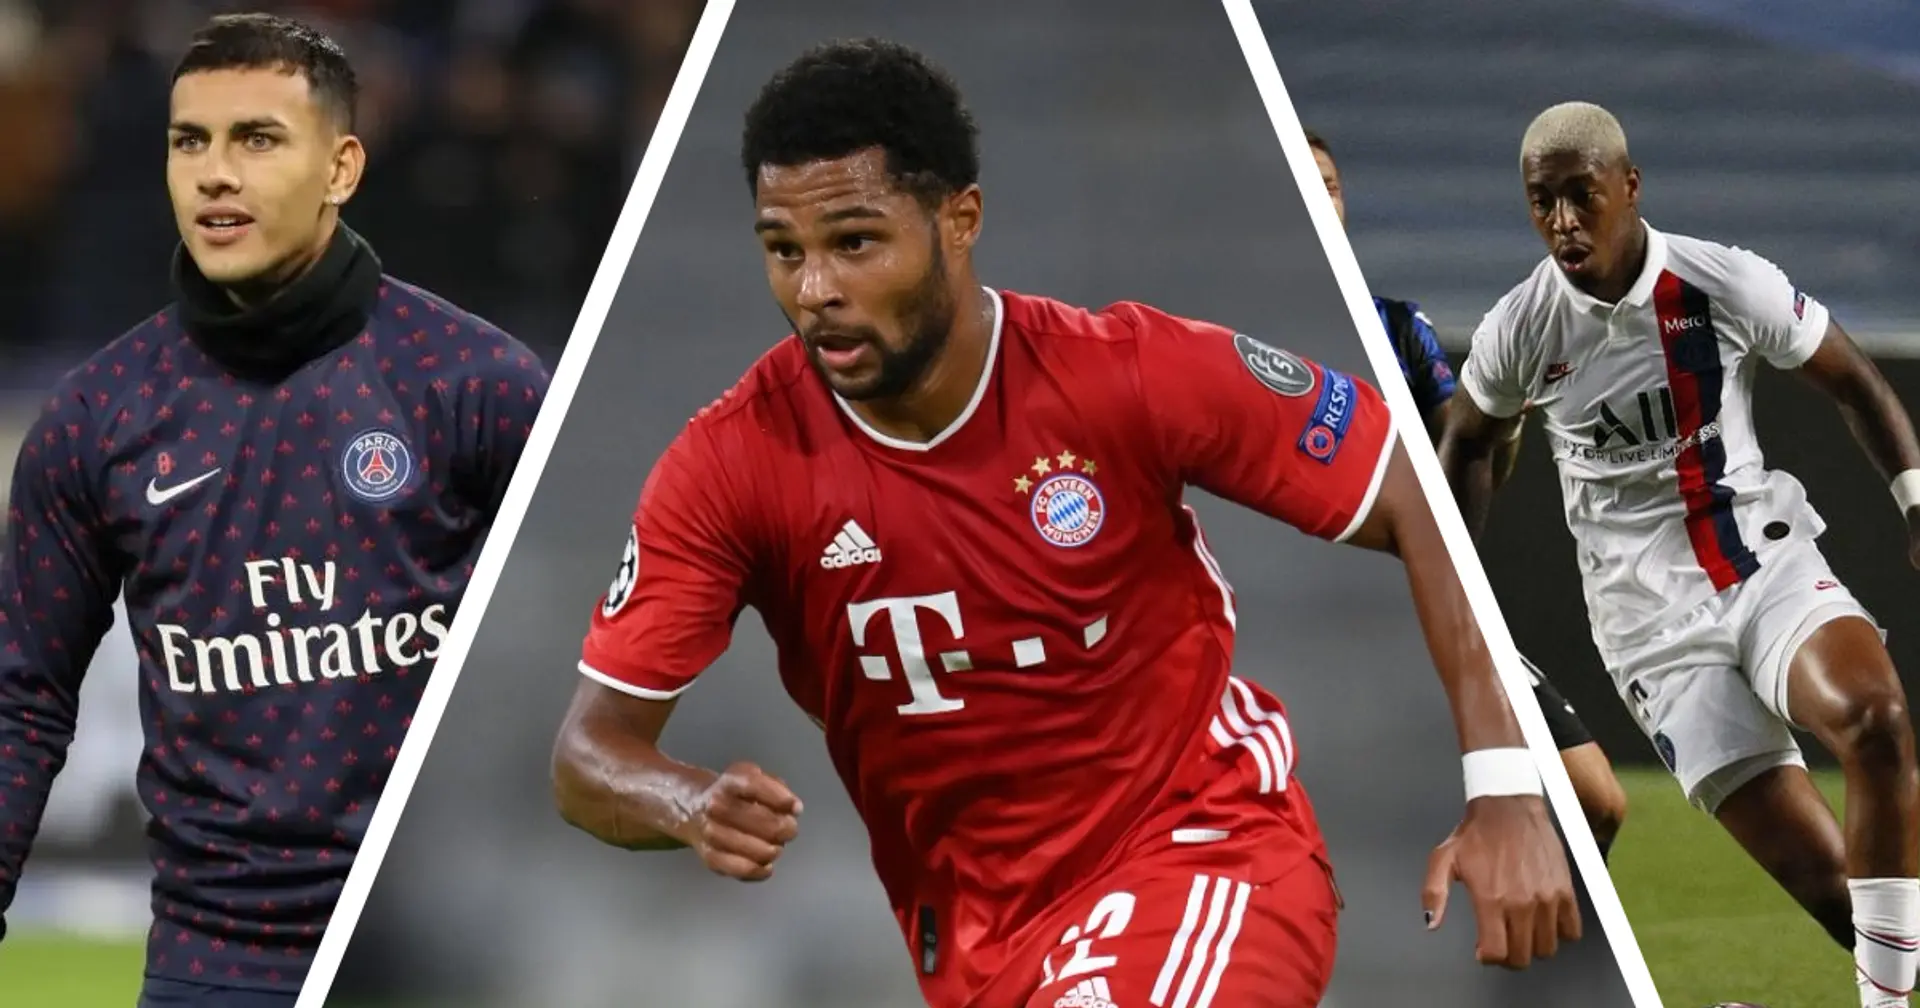 Los 4 jugadores del Bayern y PSG de los que nadie habla y serían muy válidos para el Madrid